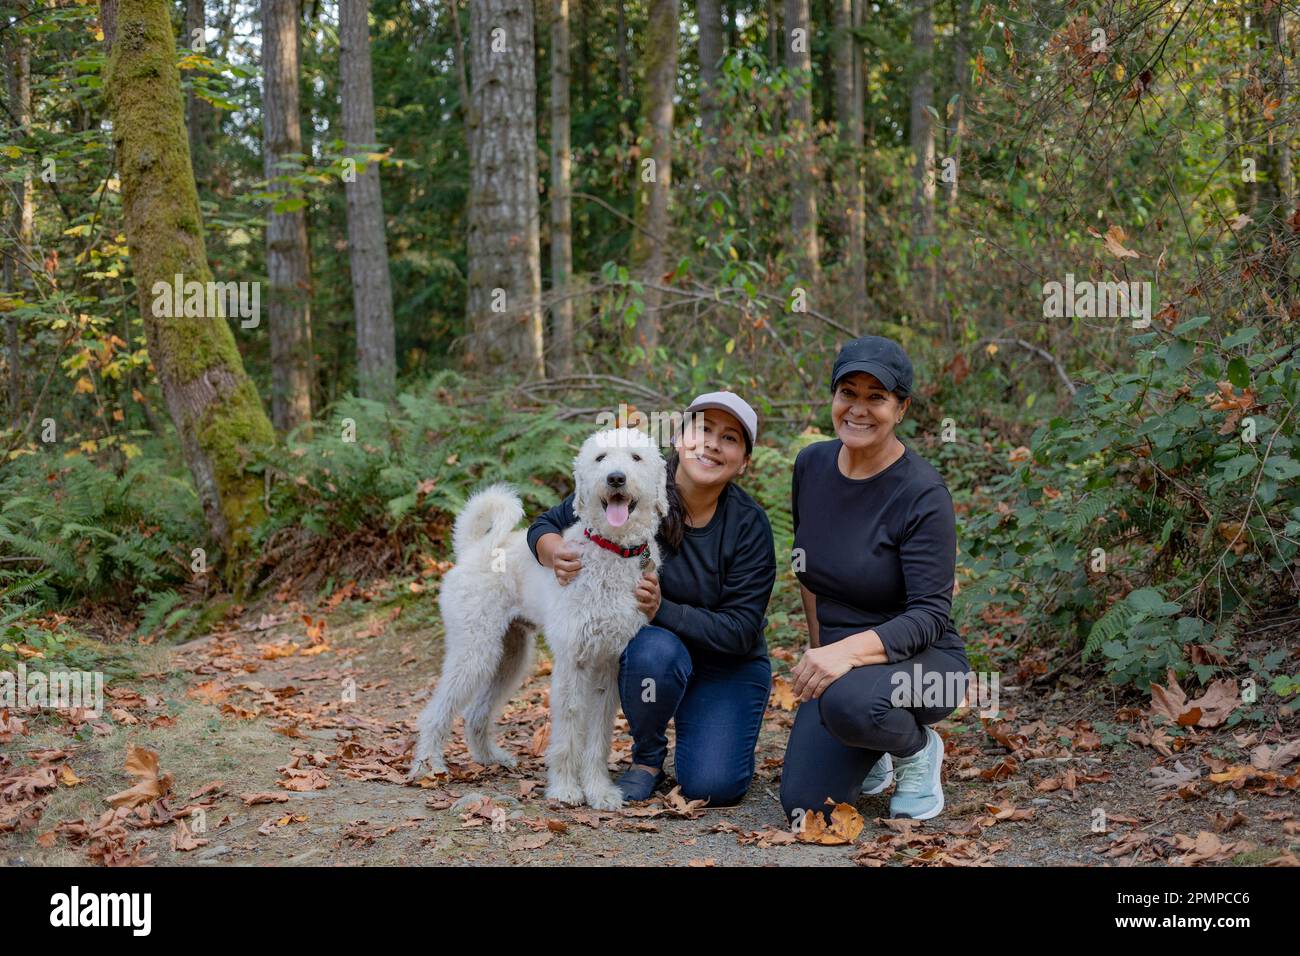 Ritratto di due donne con un cane in una zona boschiva; Vancouver Island, British Columbia, Canada Foto Stock